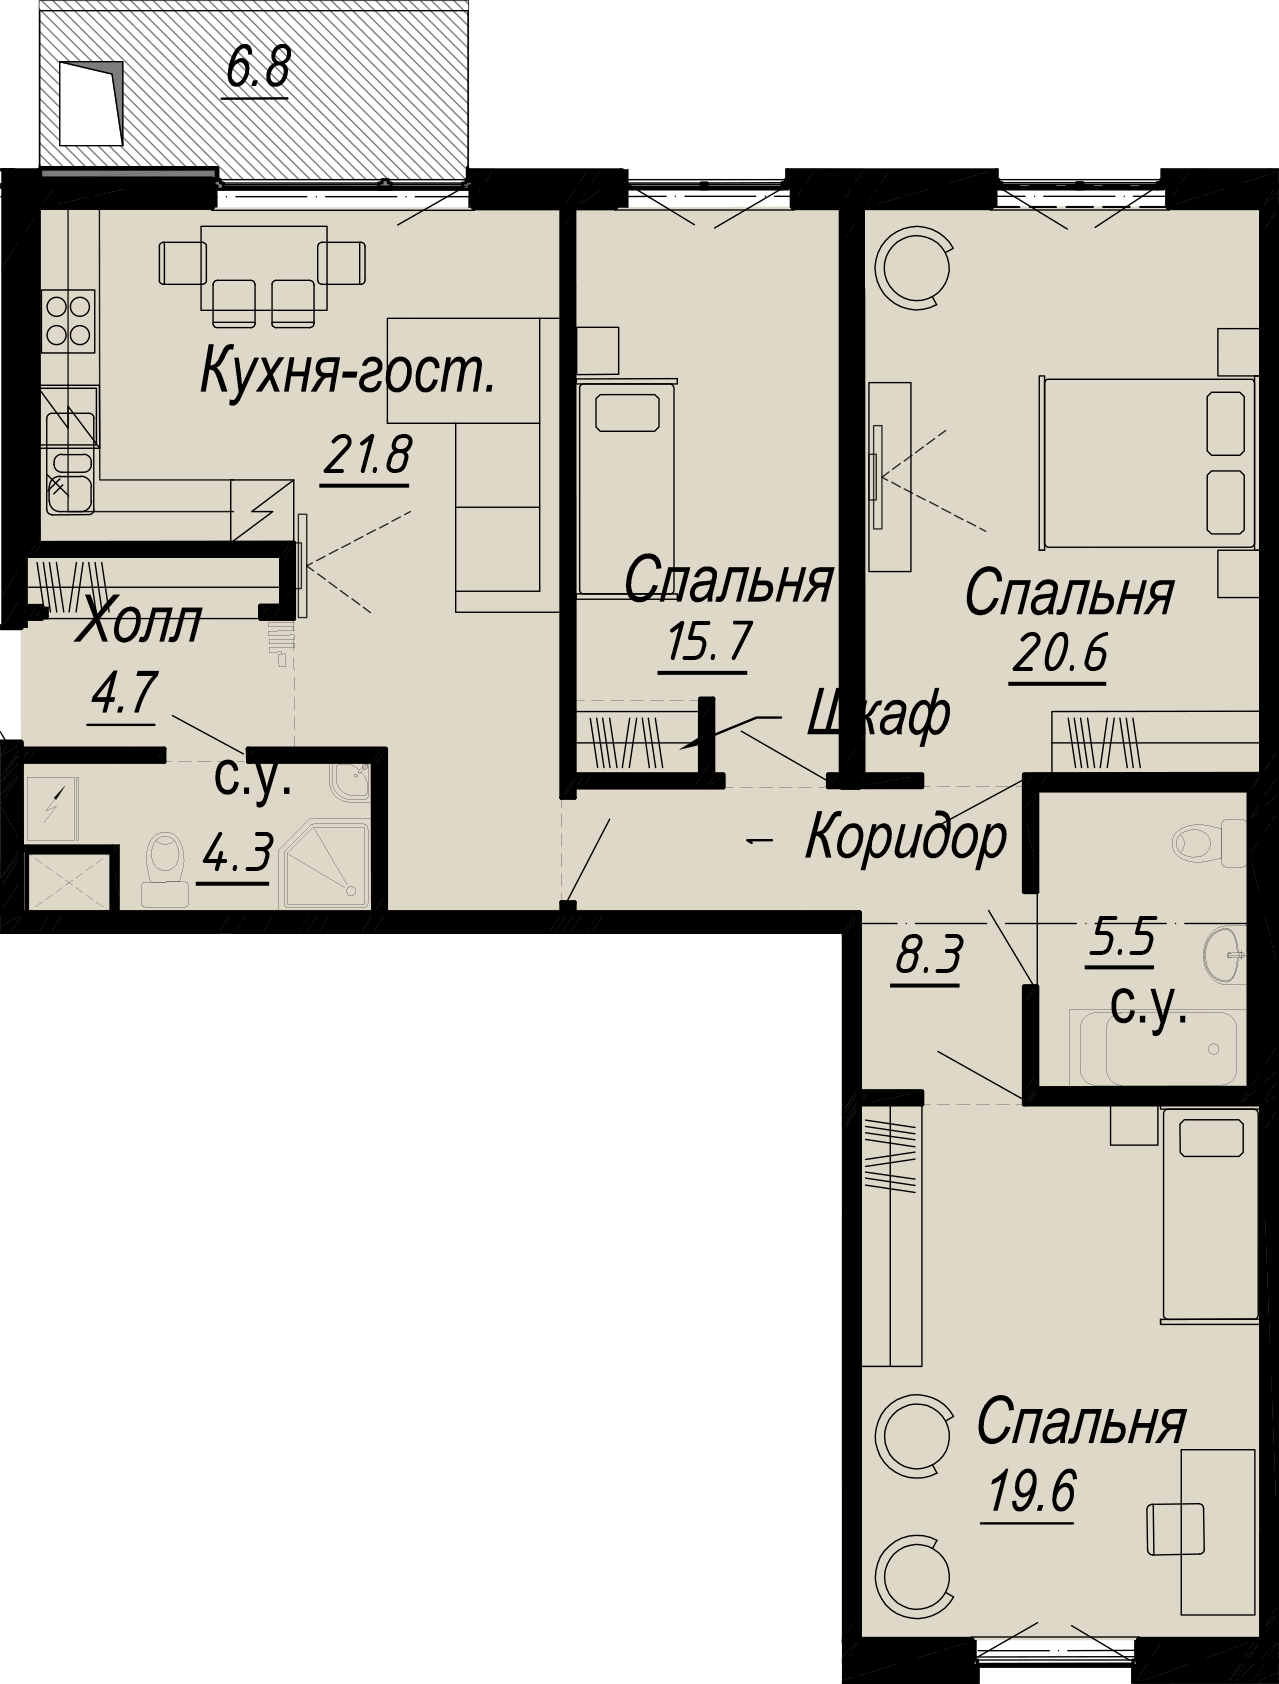 3-комнатная квартира  №4-4 в Meltzer Hall: 107.63 м², этаж 4 - купить в Санкт-Петербурге